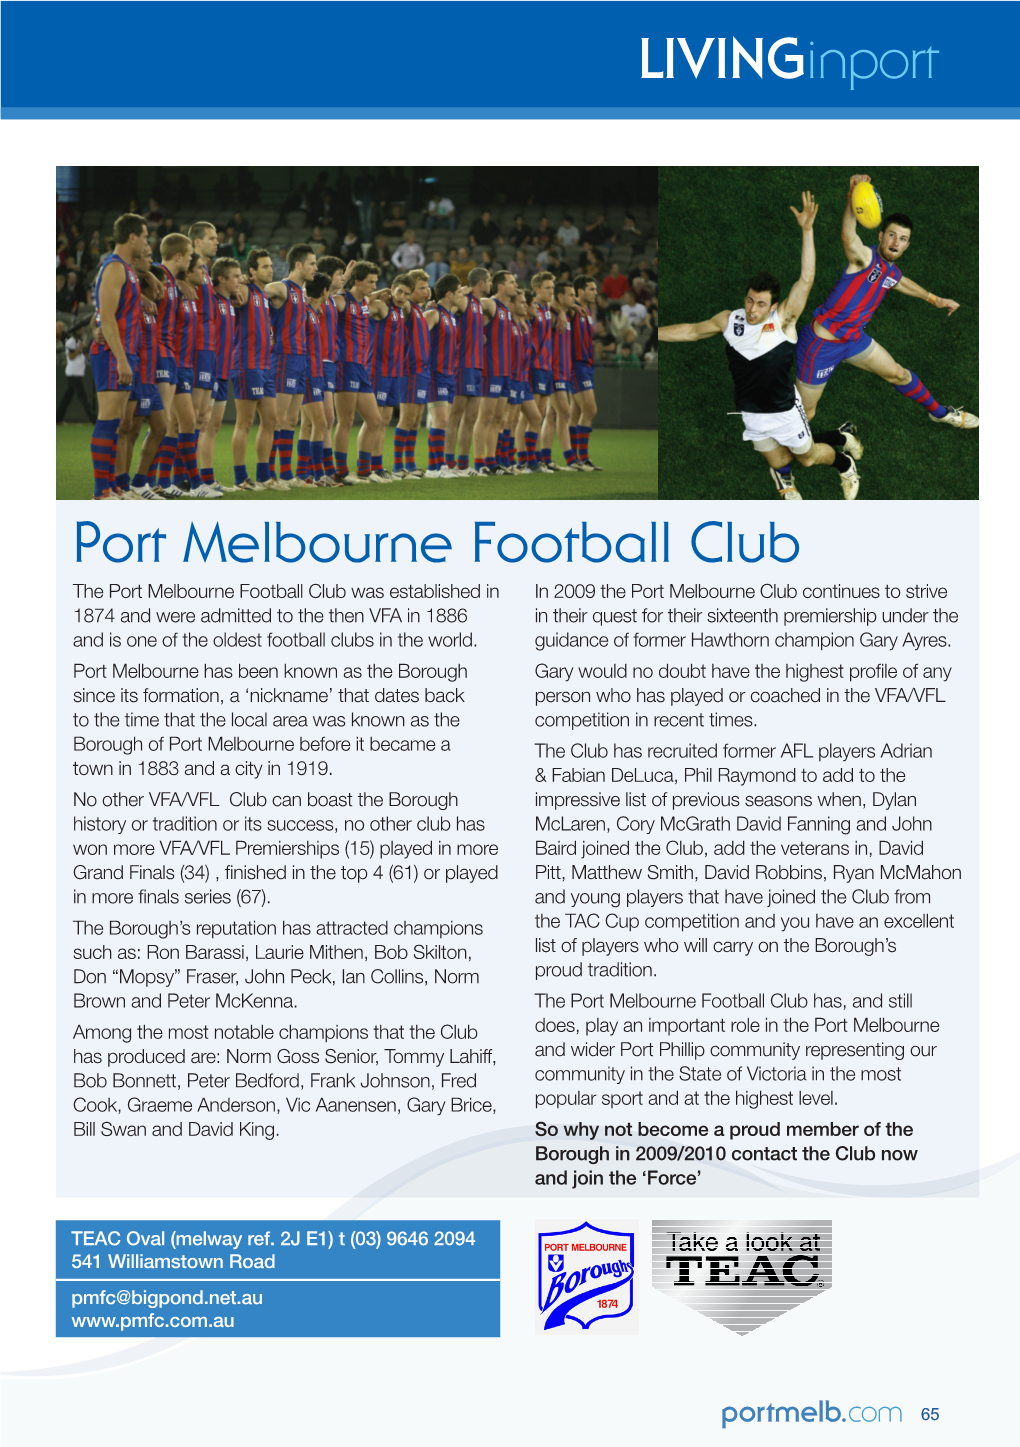 Livinginport Port Melbourne Football Club